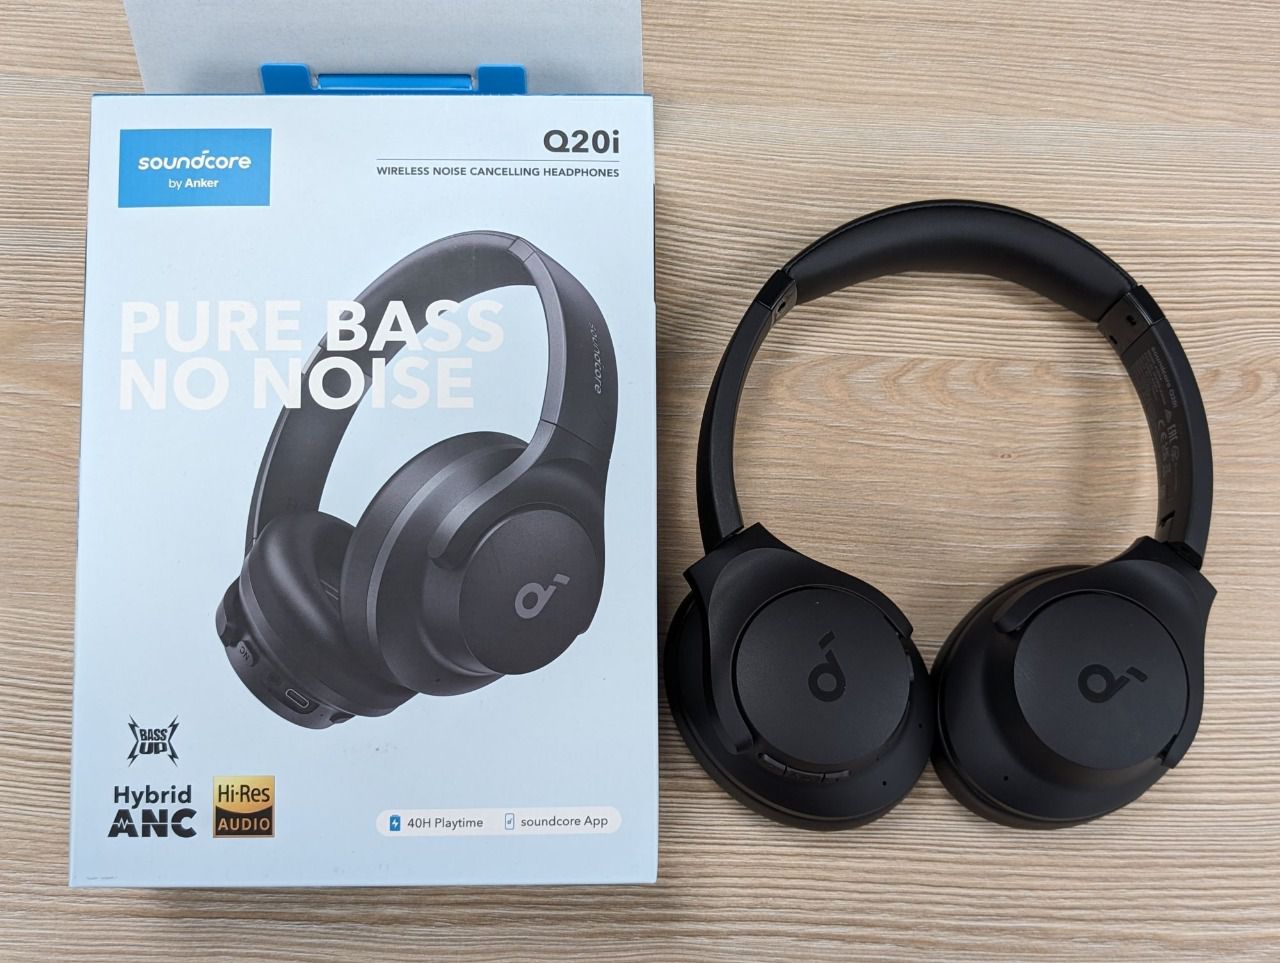 Análisis de los auriculares Soundcore Q20i: Diseño elegante y ligero,  sonido Hi-Res con bajos profundos y destacada cancelación de ruido